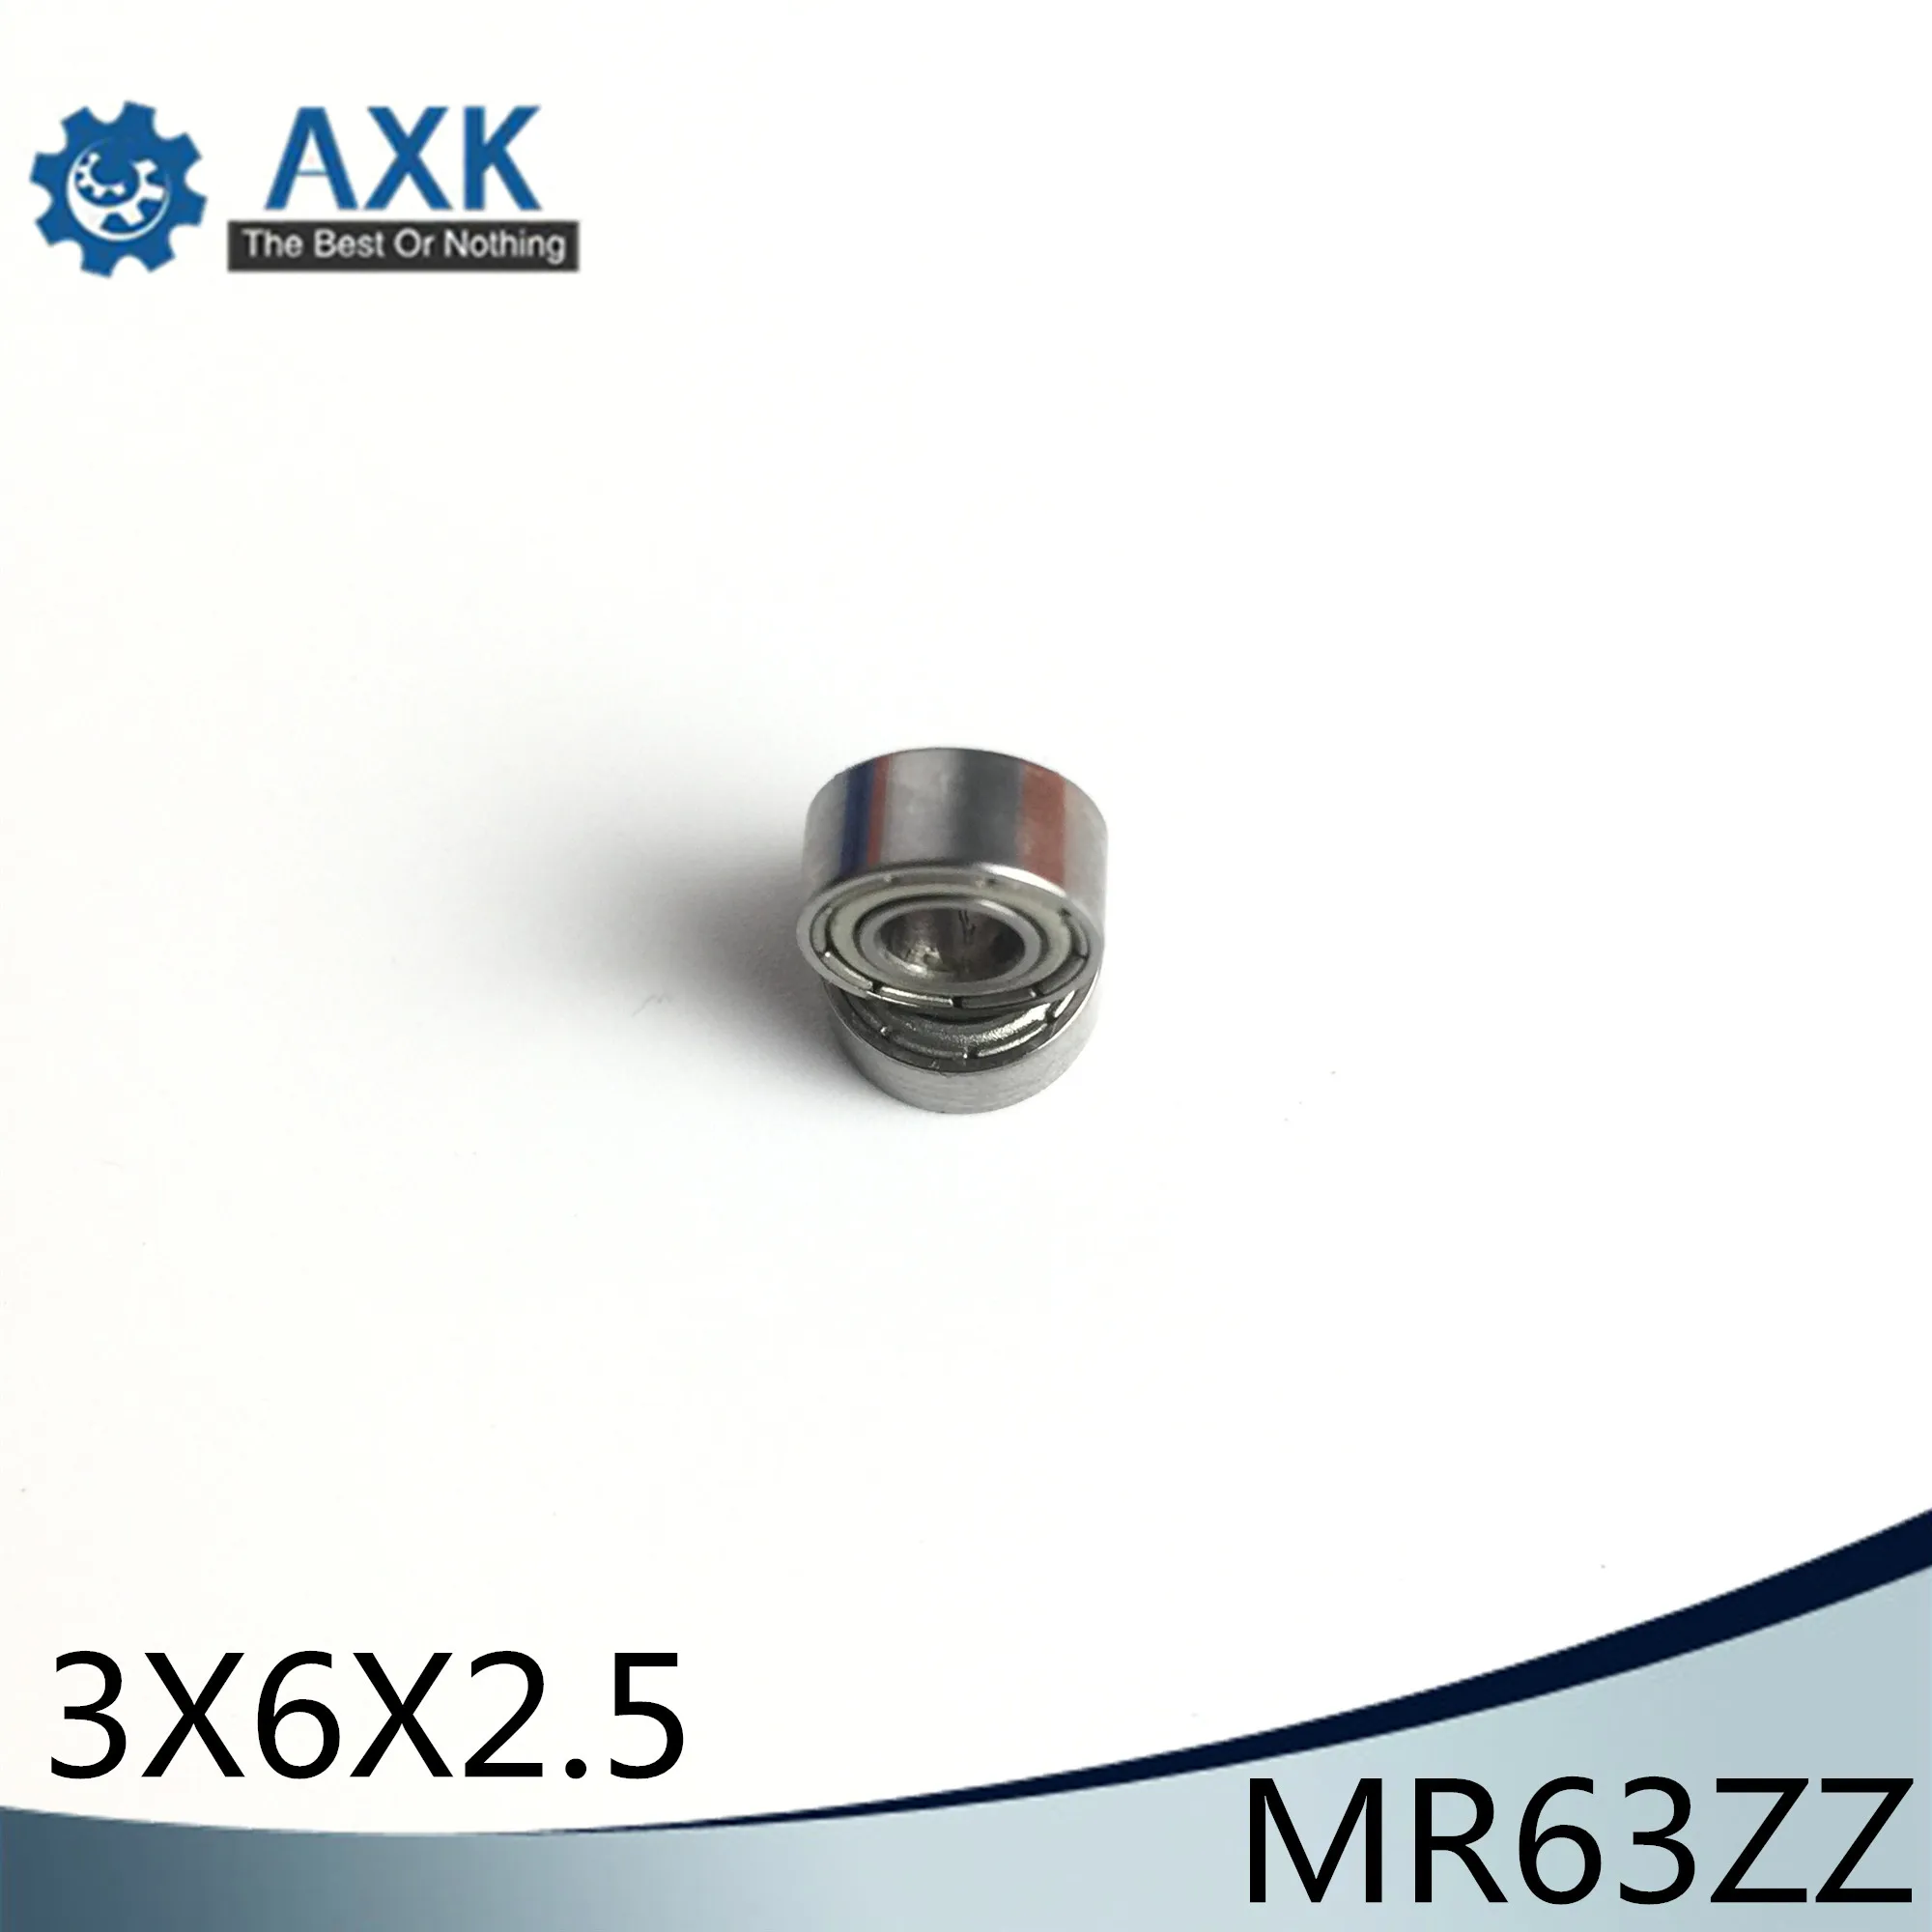 fabrication de modèles Roulement miniature 10 pièces MR63ZZ roulements à billes miniatures à double blindage 3x6x2.5mm pour imprimante 3D